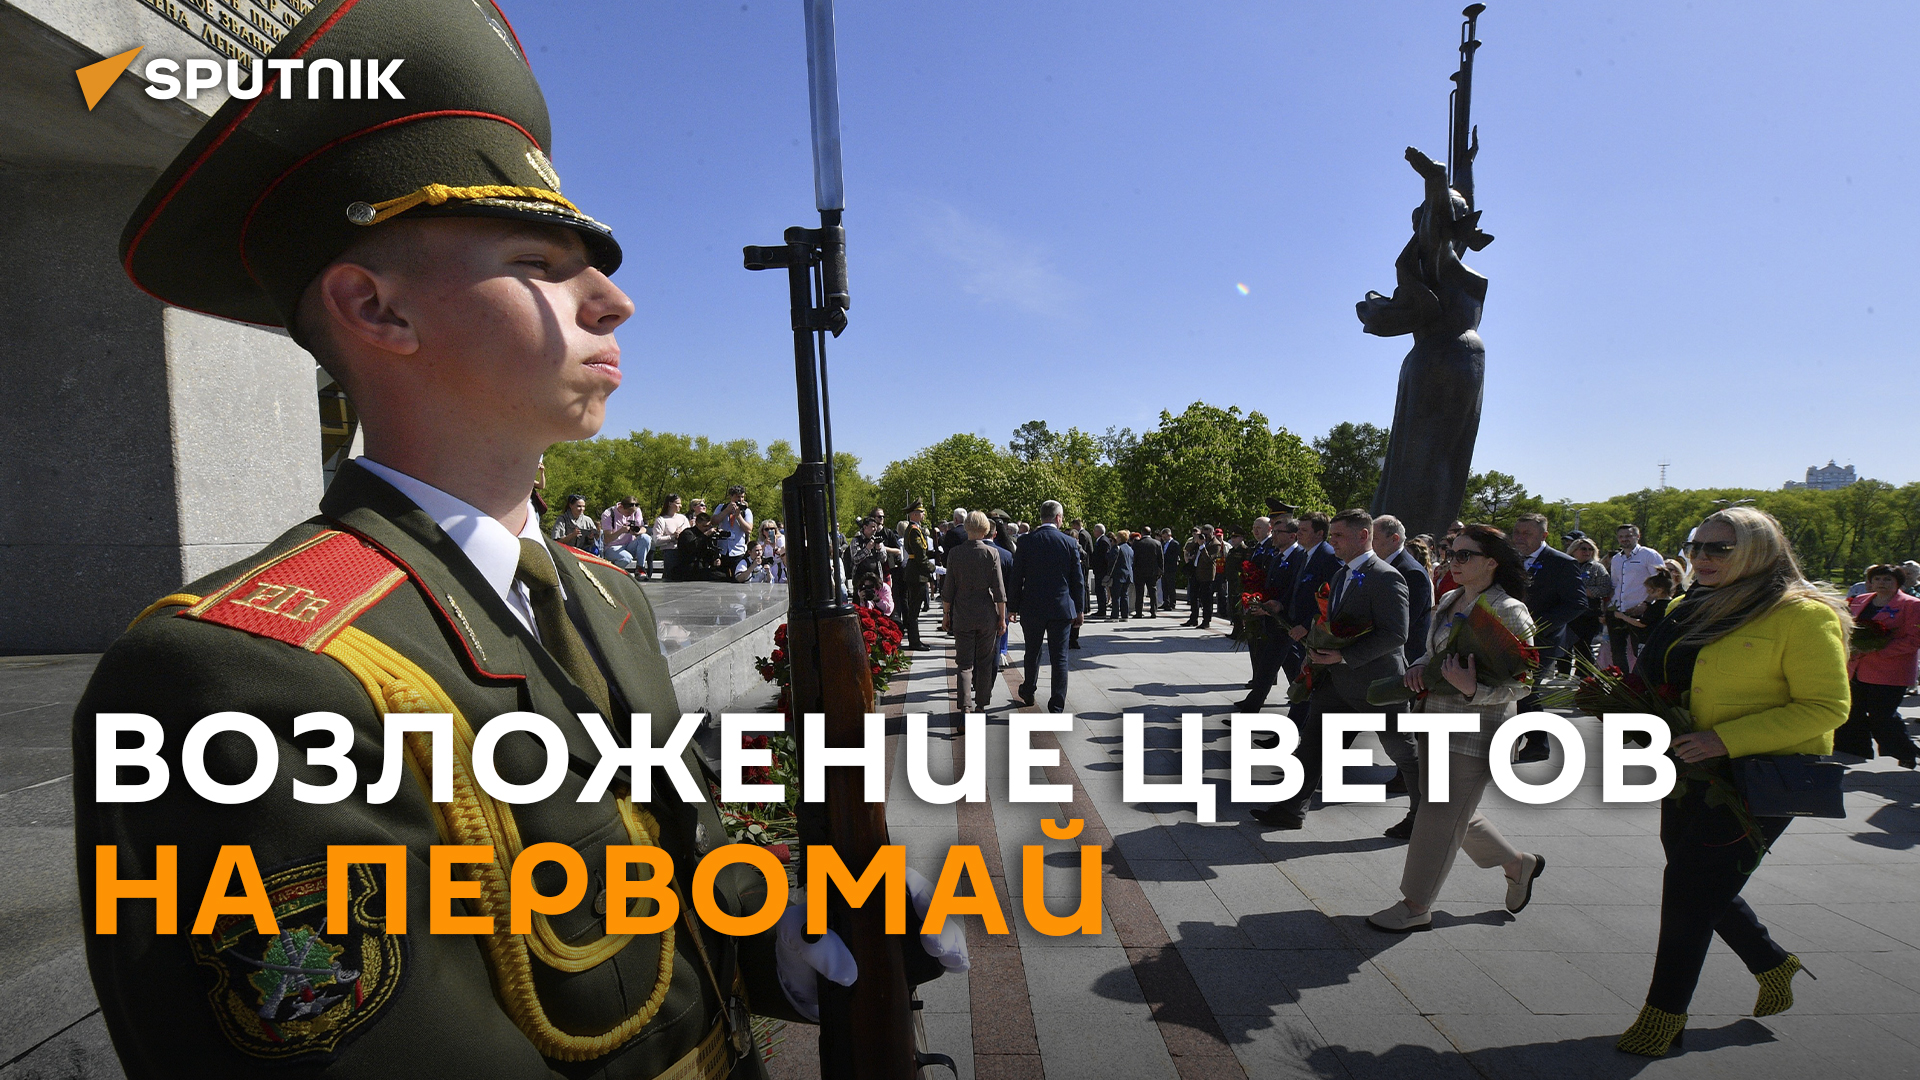 Представители профсоюзов возложили цветы к стеле "Минск – город герой"